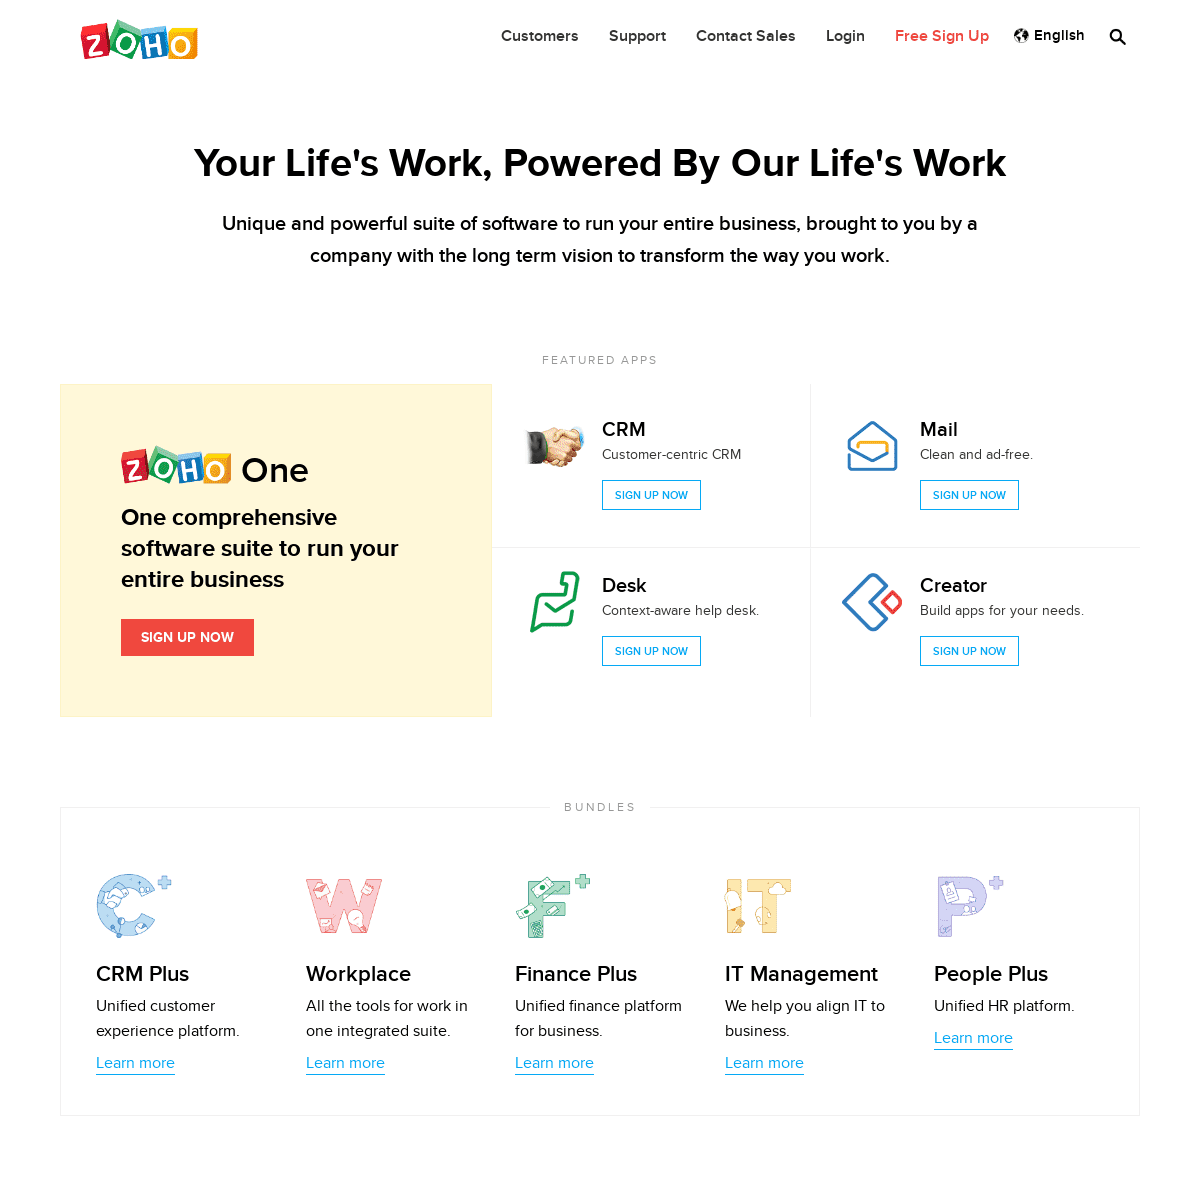 A complete backup of zoho.com